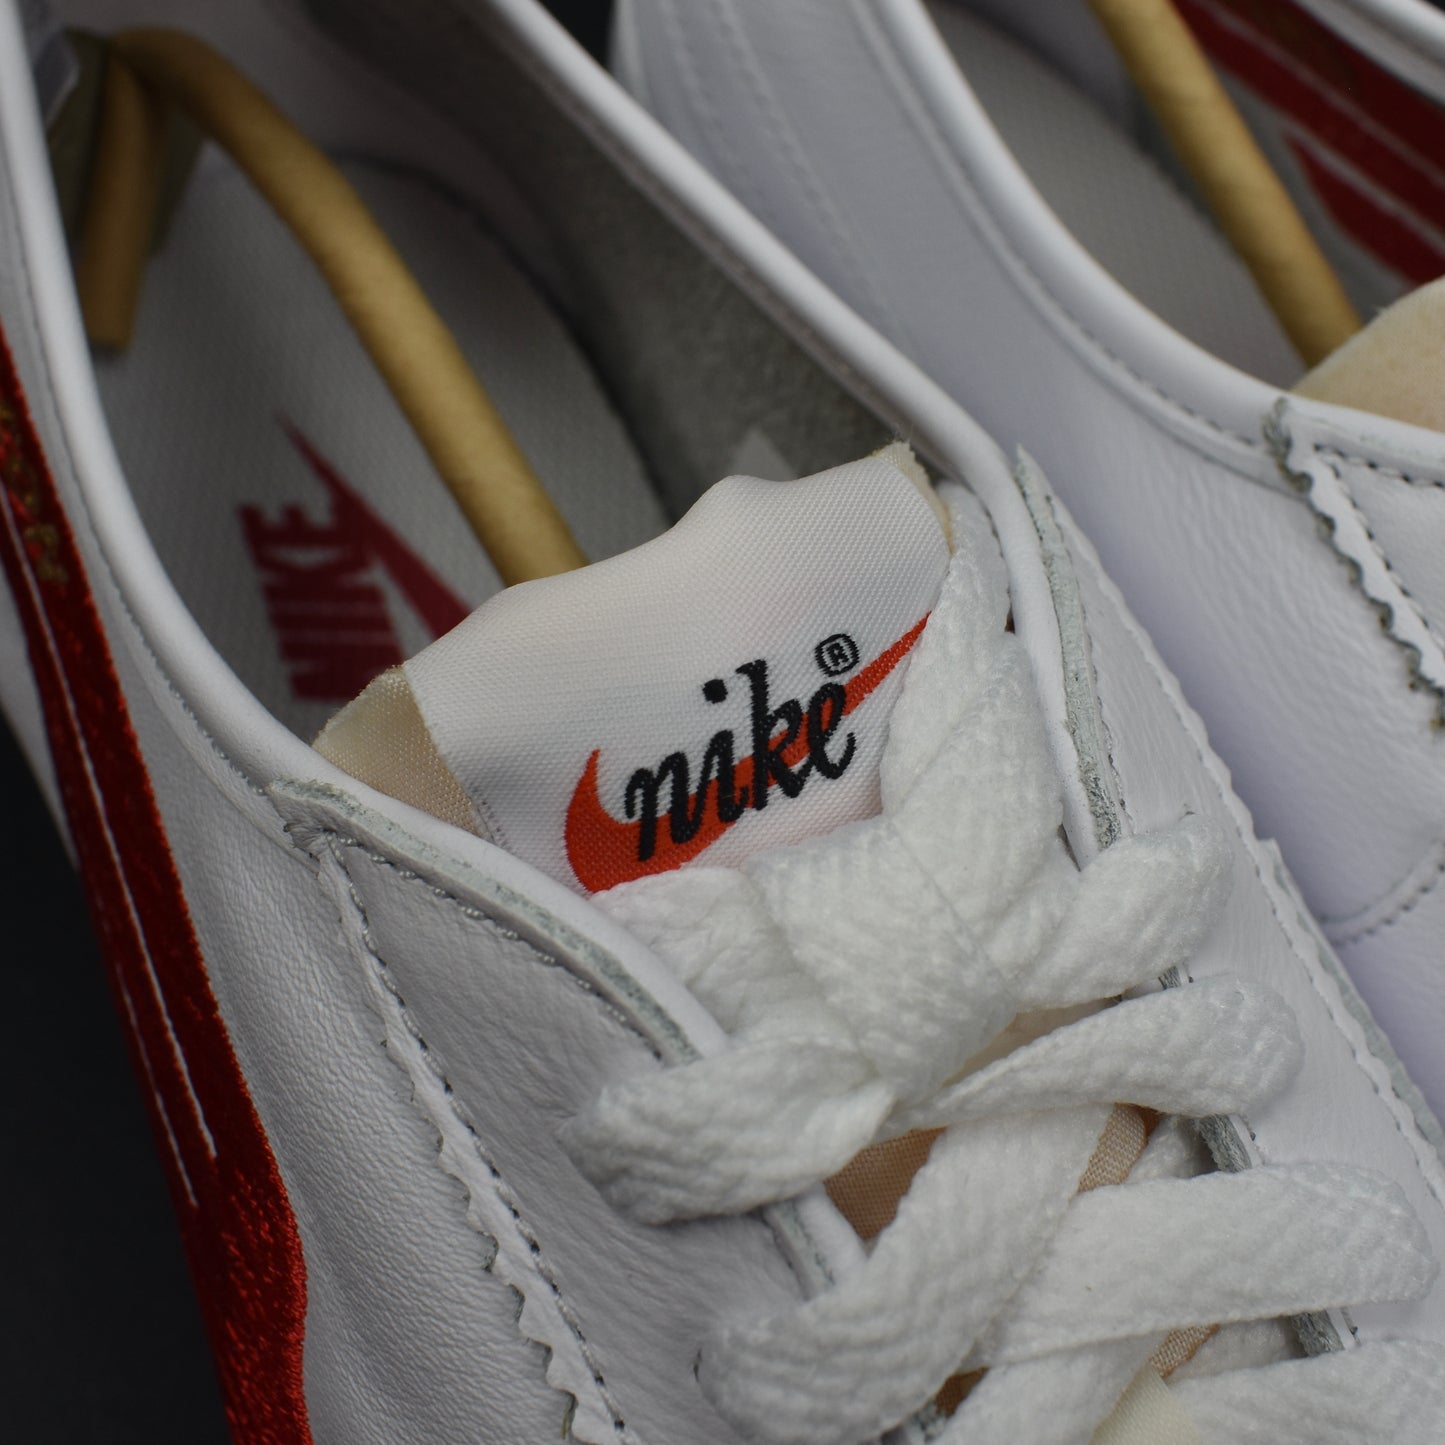 Nike - Cortez 72 Leather Shoe Dog 'Falcon'